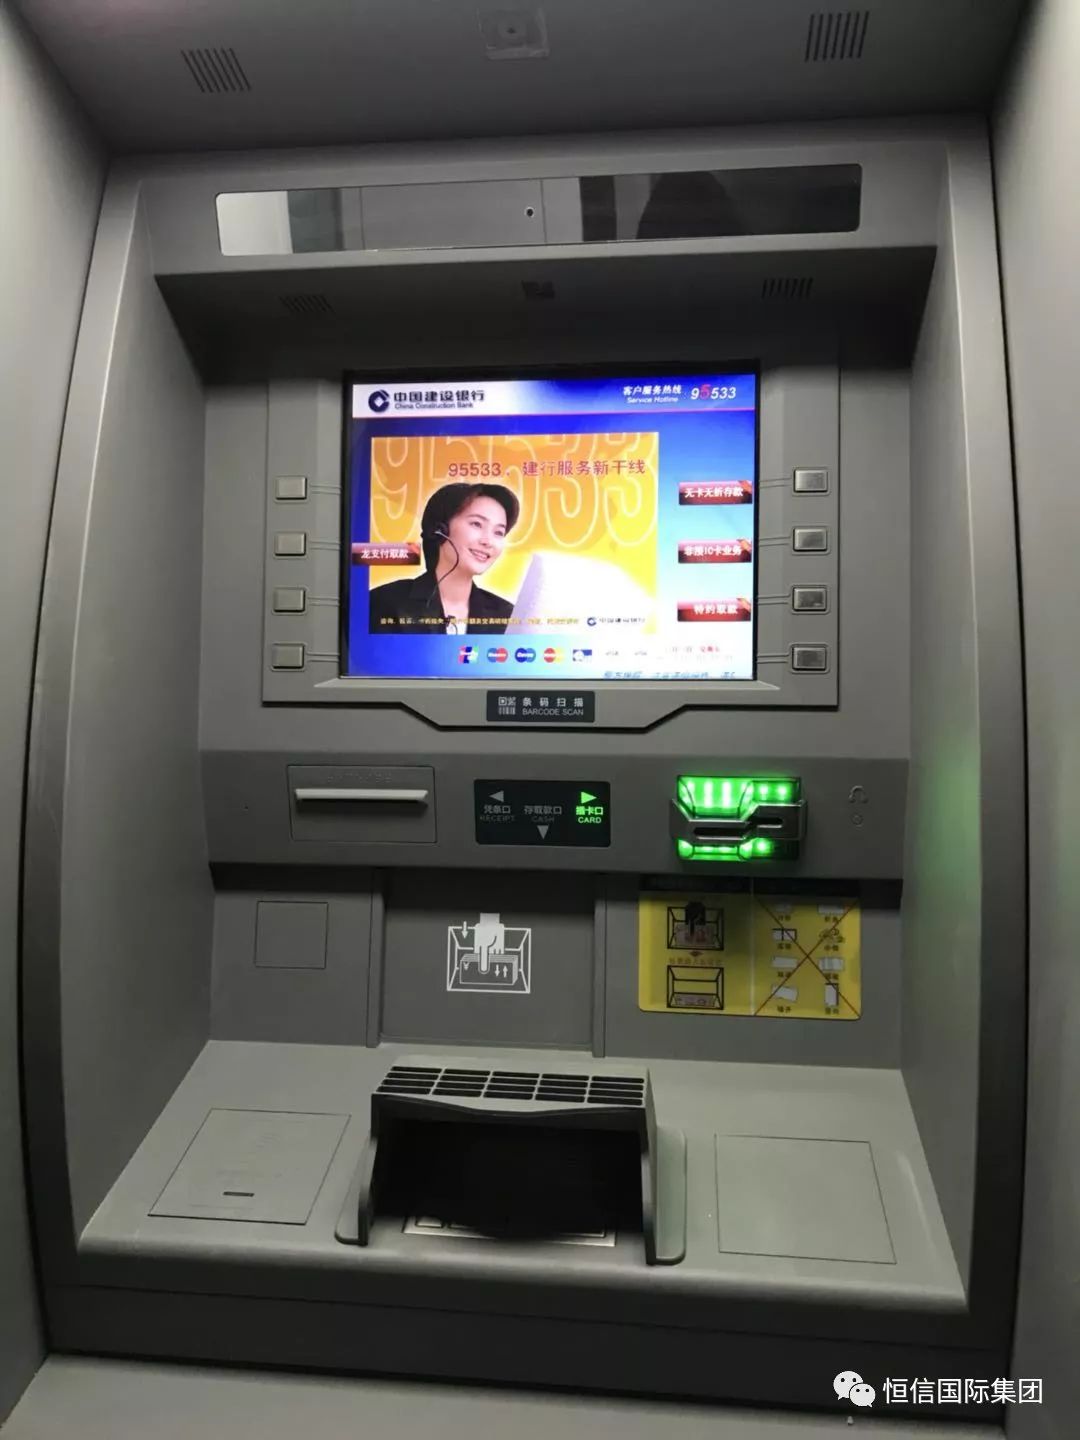 24小时的贴心服务“ HALO2 (Retail ATM) ”自动取款机 - 普象网